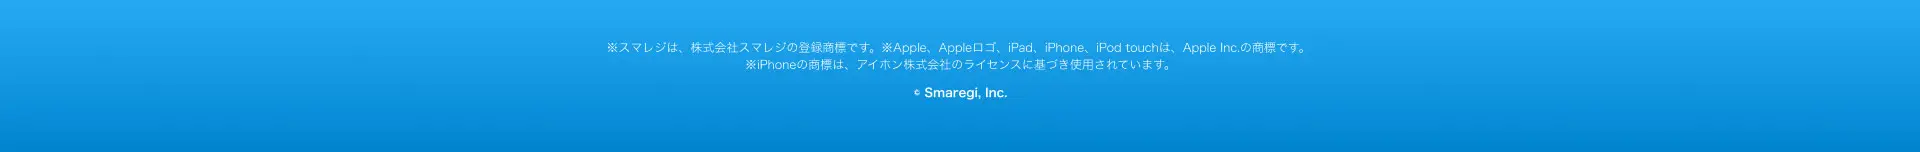 ※スマレジは、株式会社スマレジの登録商標です。 ※Apple、 Appleロゴ、iPad、iPhone、iPod touchは、 Apple Inc. の商標です。 ※iPhoneの商標は、アイホン株式会社のライセンスに基づき使用されています。
© Smaregi, Inc.